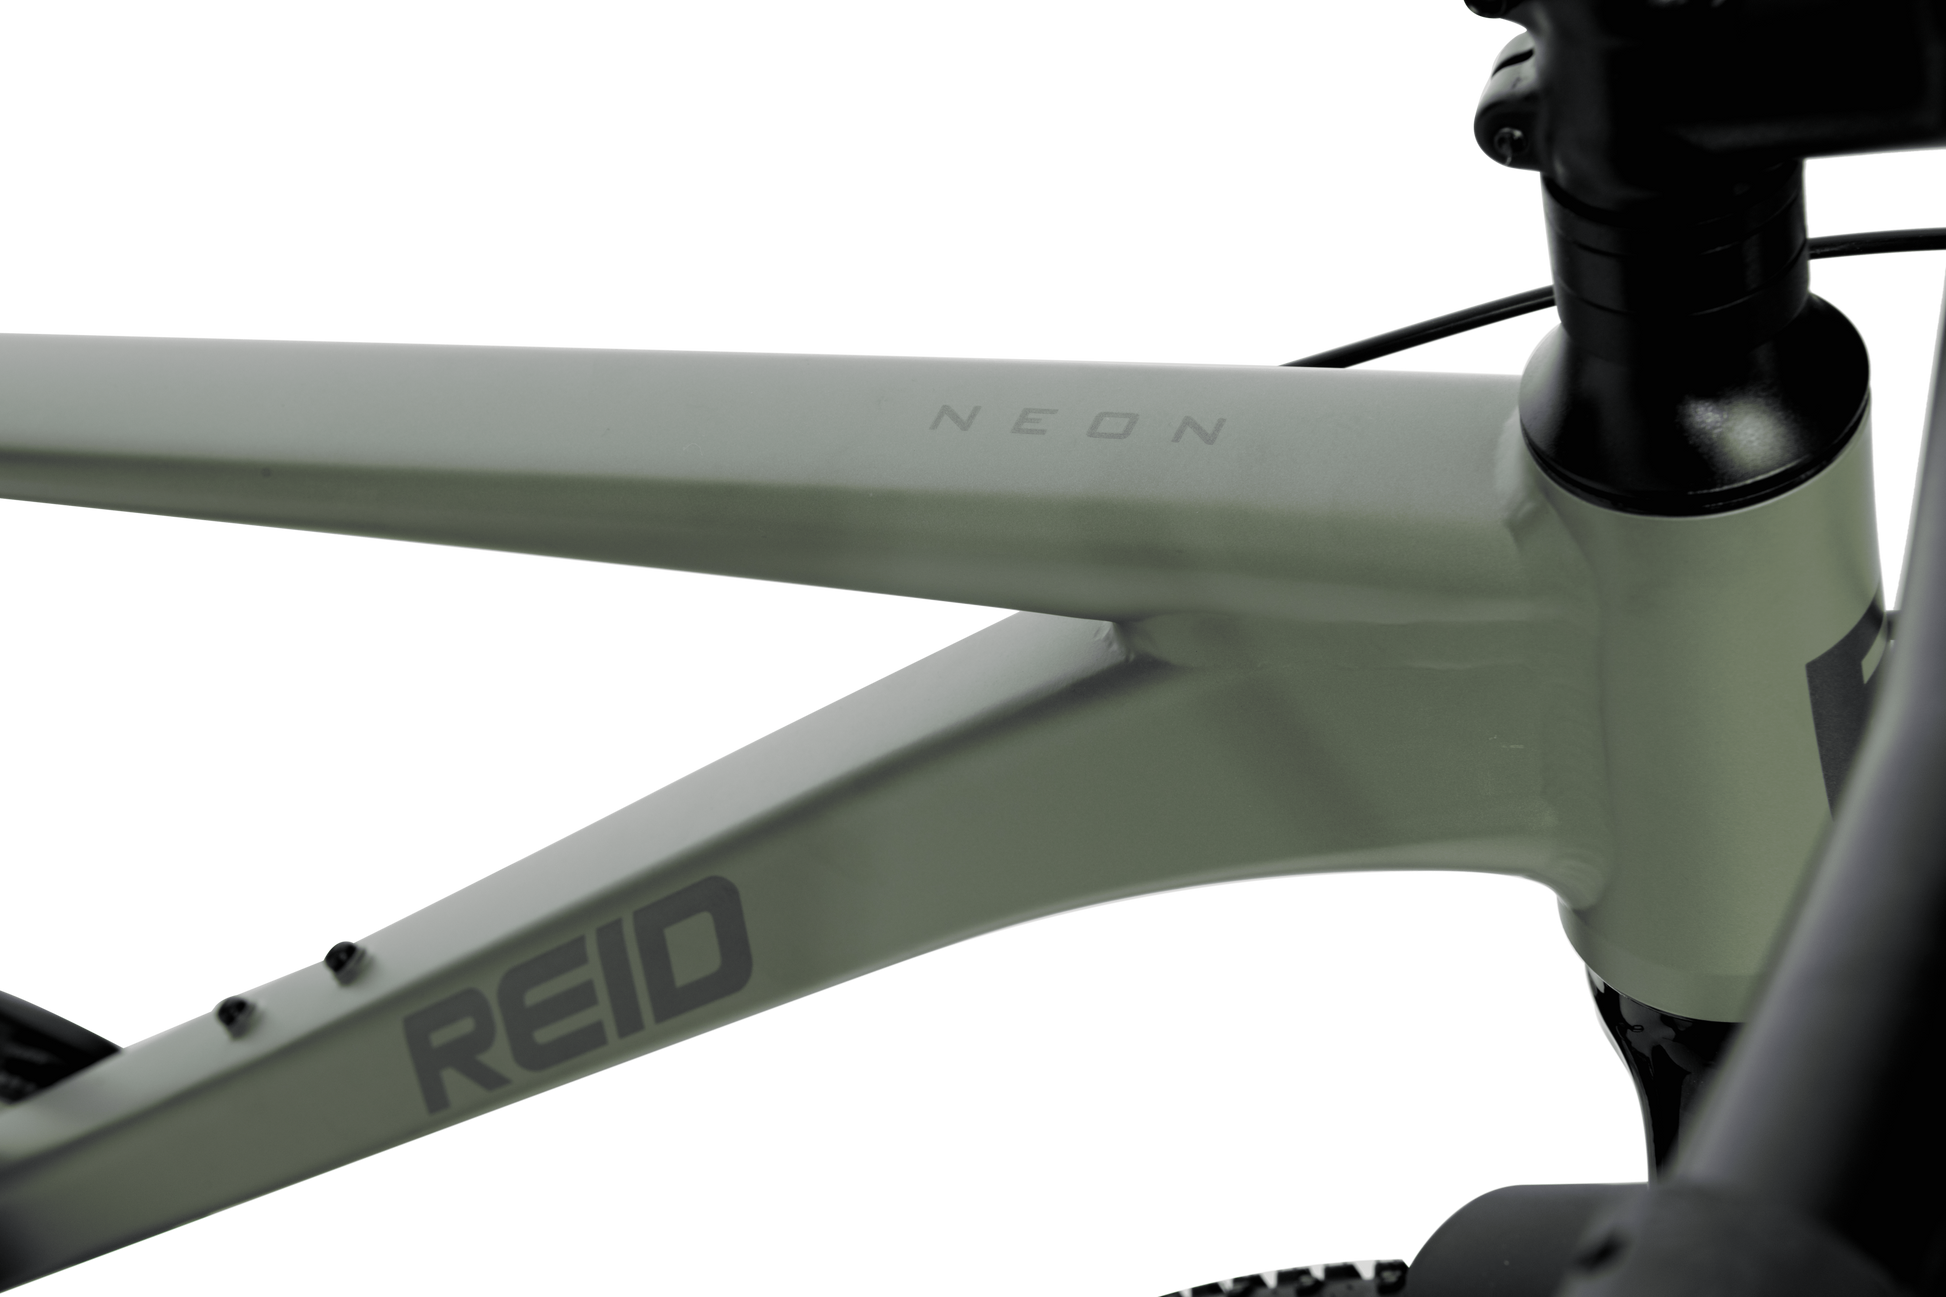 Neon Trail Mountain Bike in Green showing Reid logo on bike frame from Reid Cycles Australia 